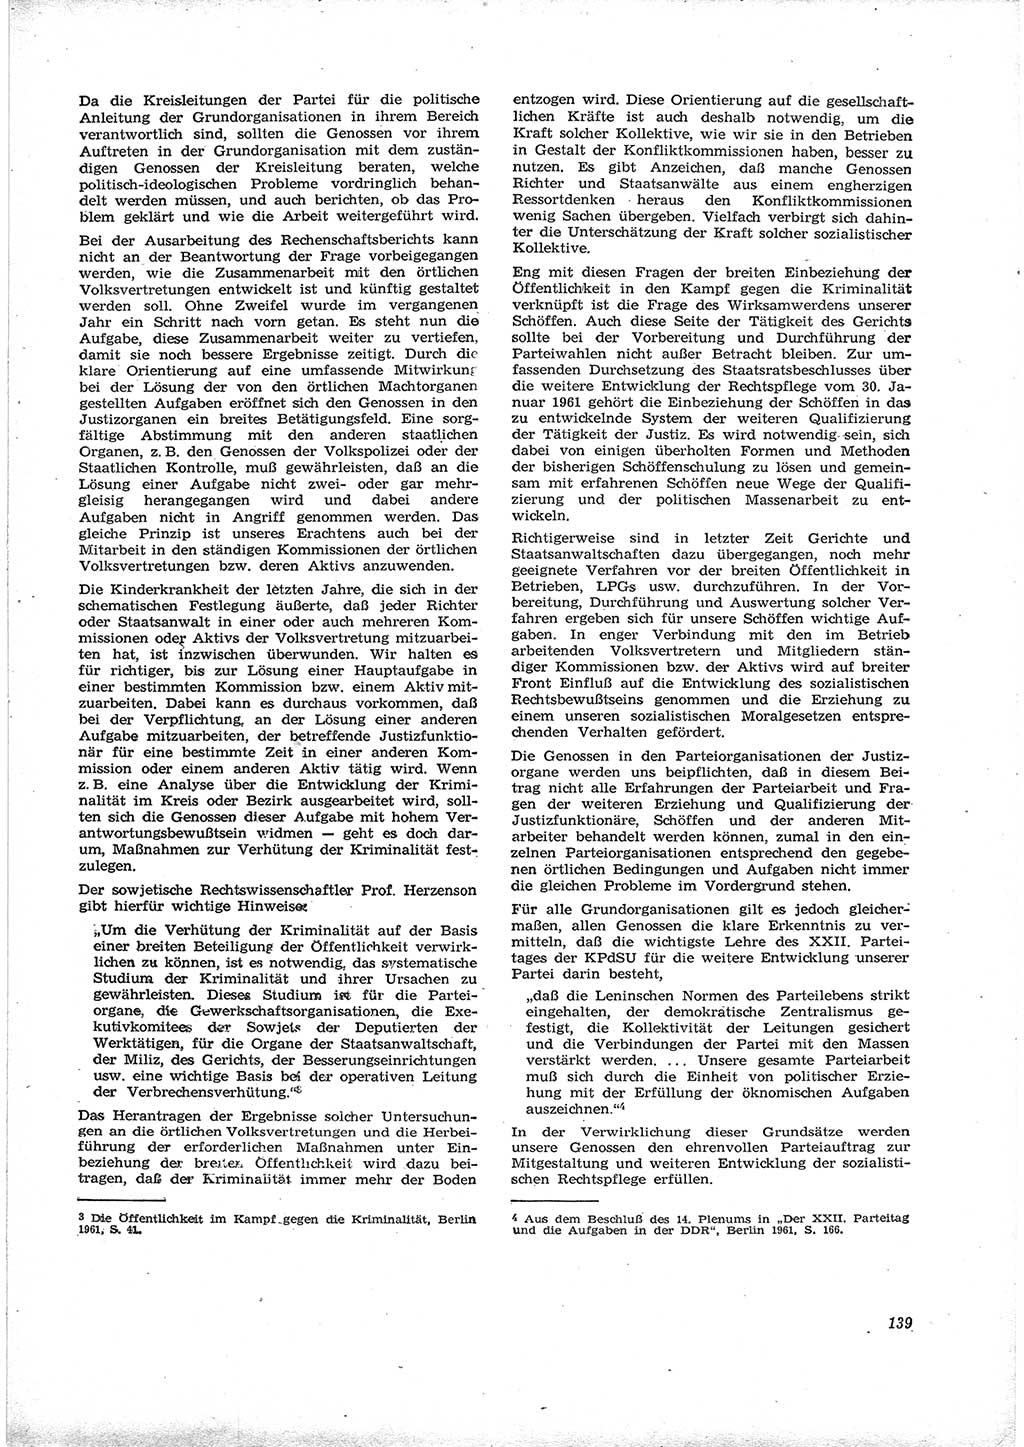 Neue Justiz (NJ), Zeitschrift für Recht und Rechtswissenschaft [Deutsche Demokratische Republik (DDR)], 16. Jahrgang 1962, Seite 139 (NJ DDR 1962, S. 139)